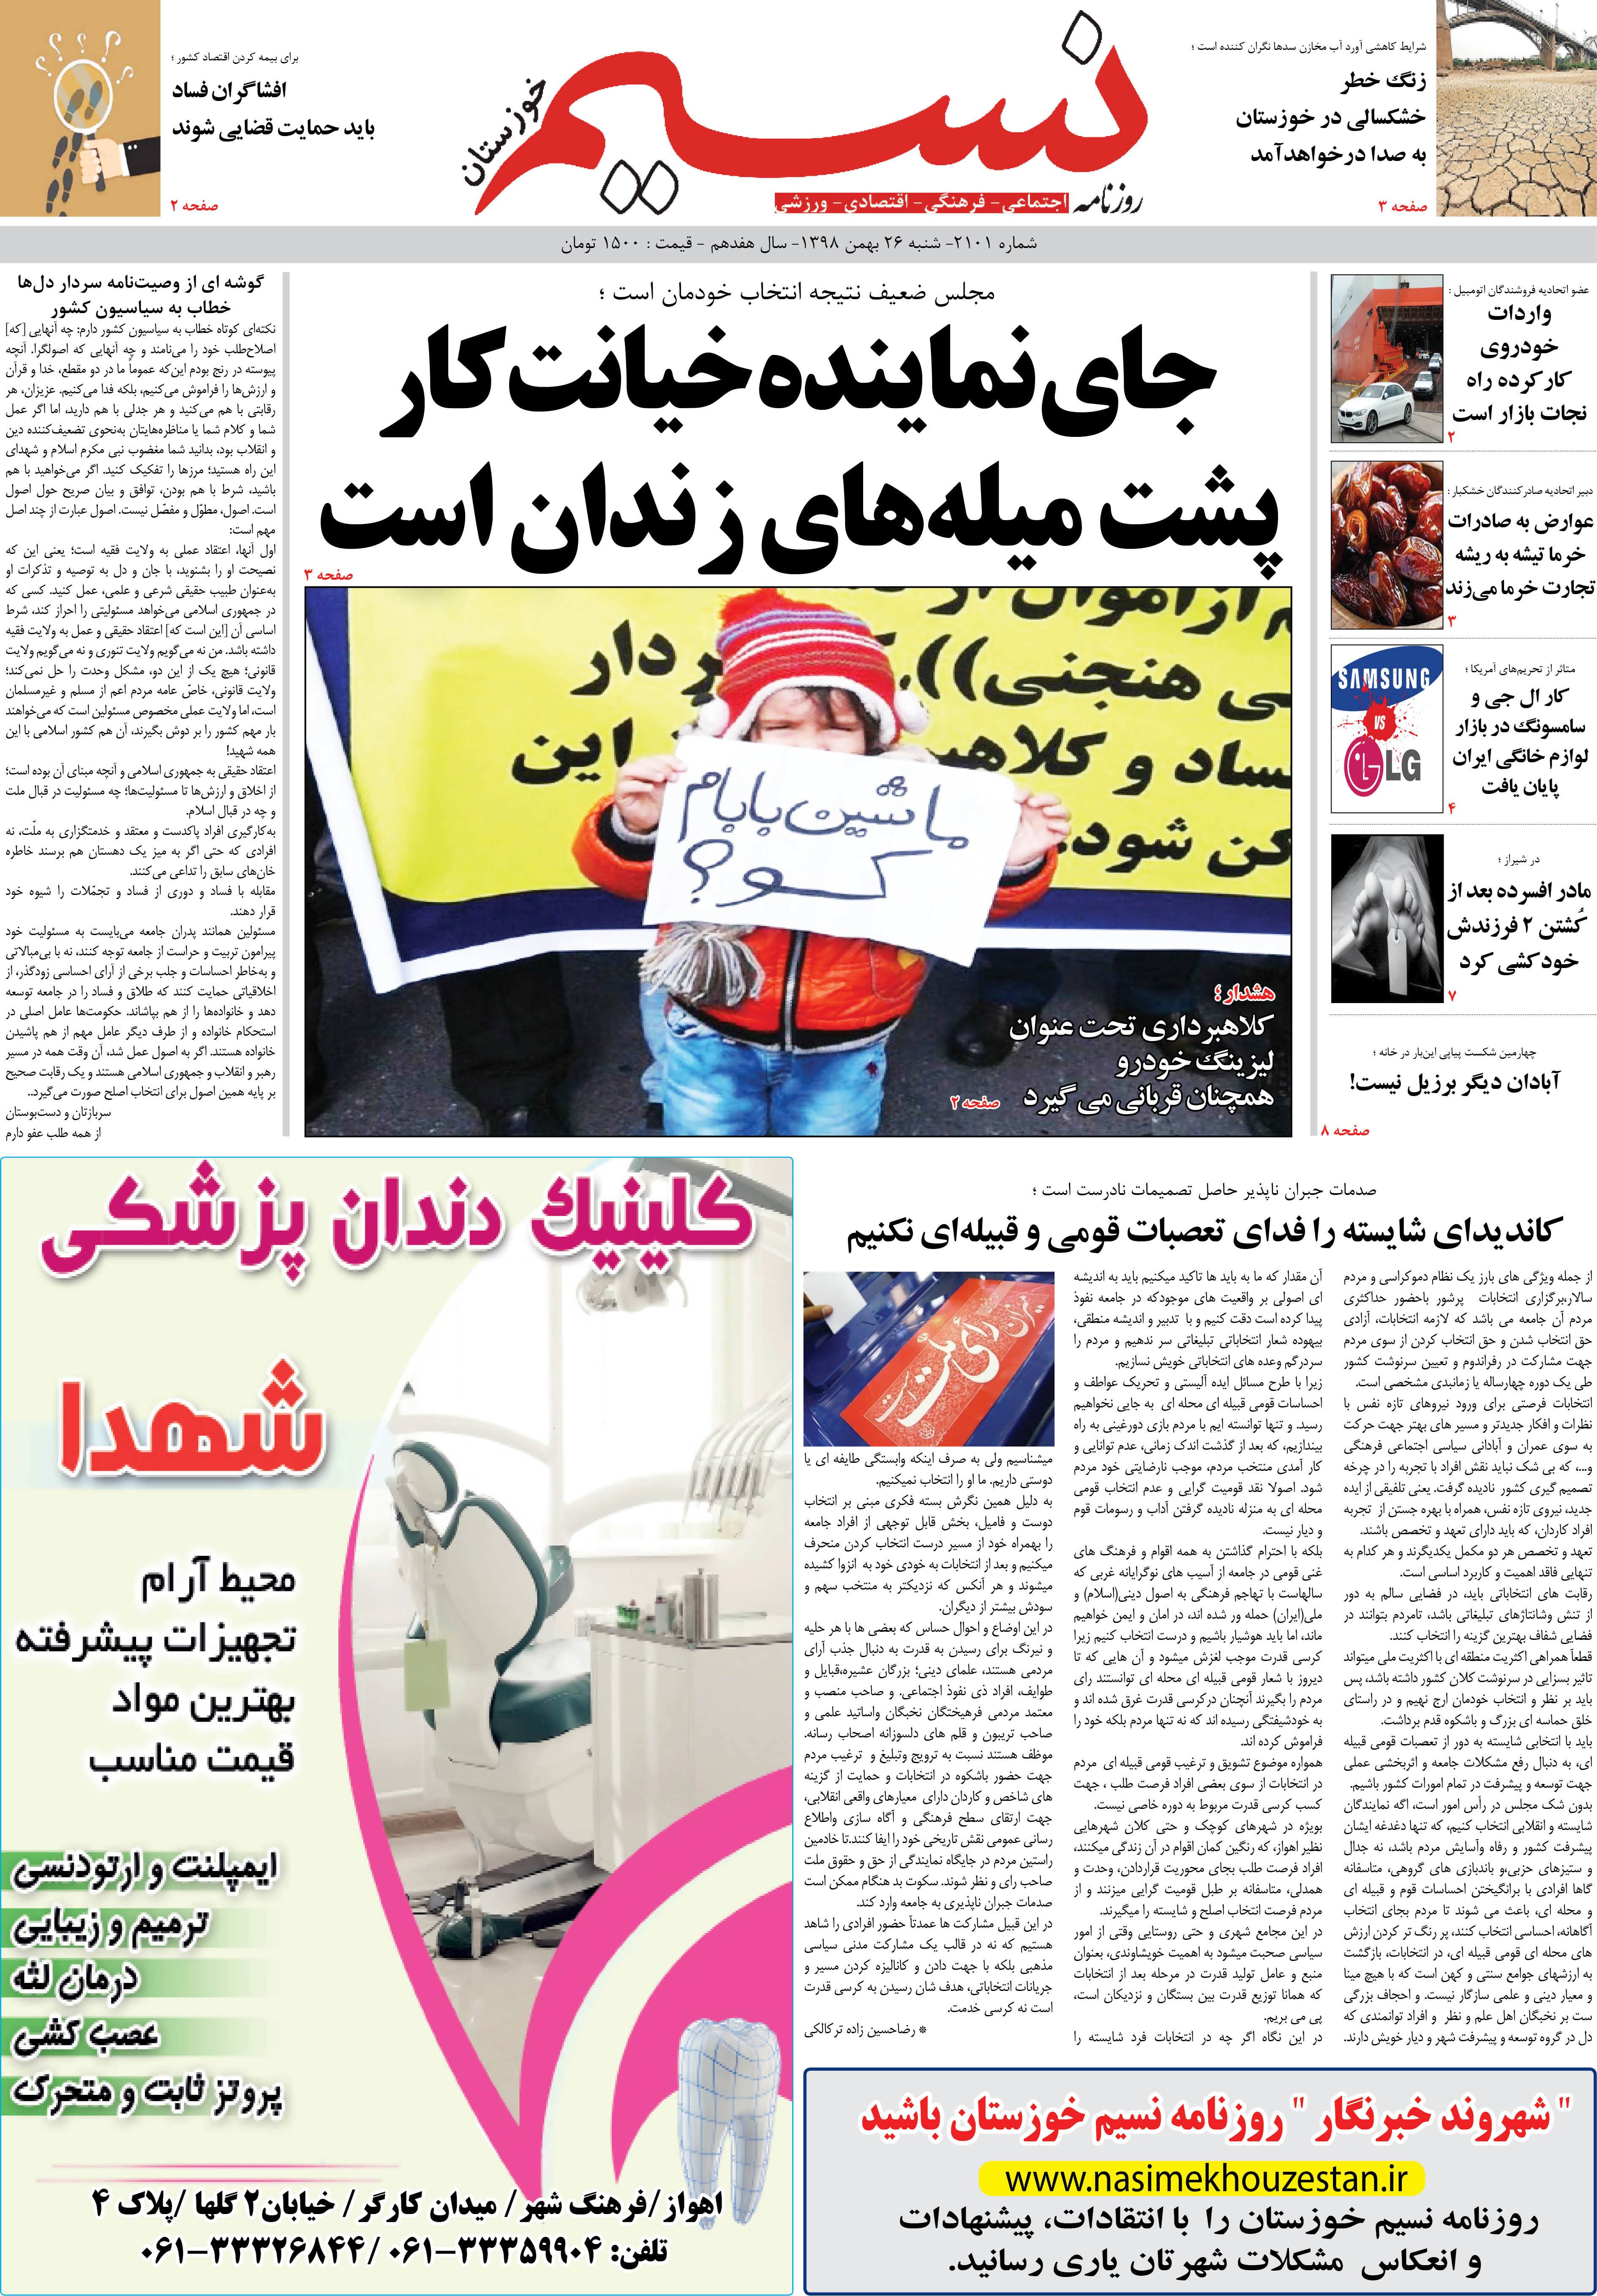 صفحه اصلی روزنامه نسیم شماره 2101 